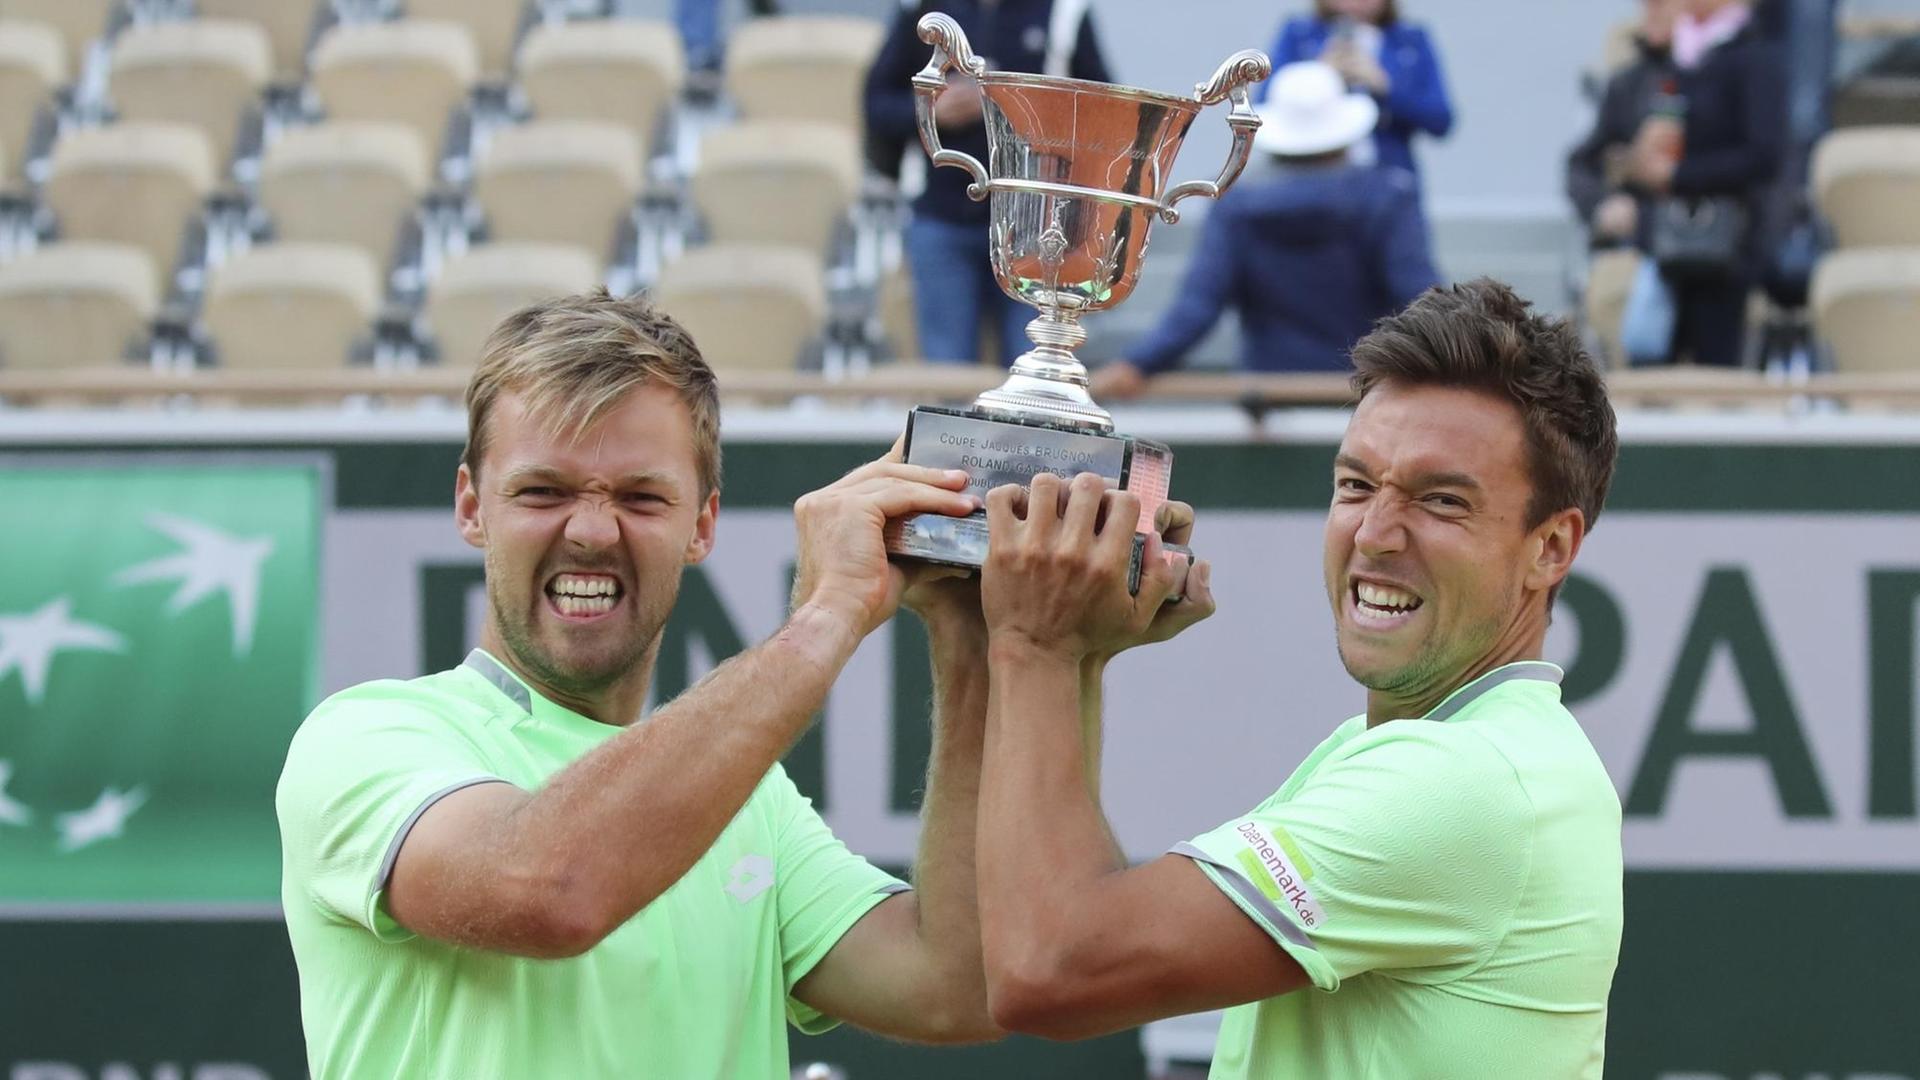 Die deutschen Doppel-Sieger bei den French Open 2019, Andreas Mies und Kevin Krawietz mit Pokal